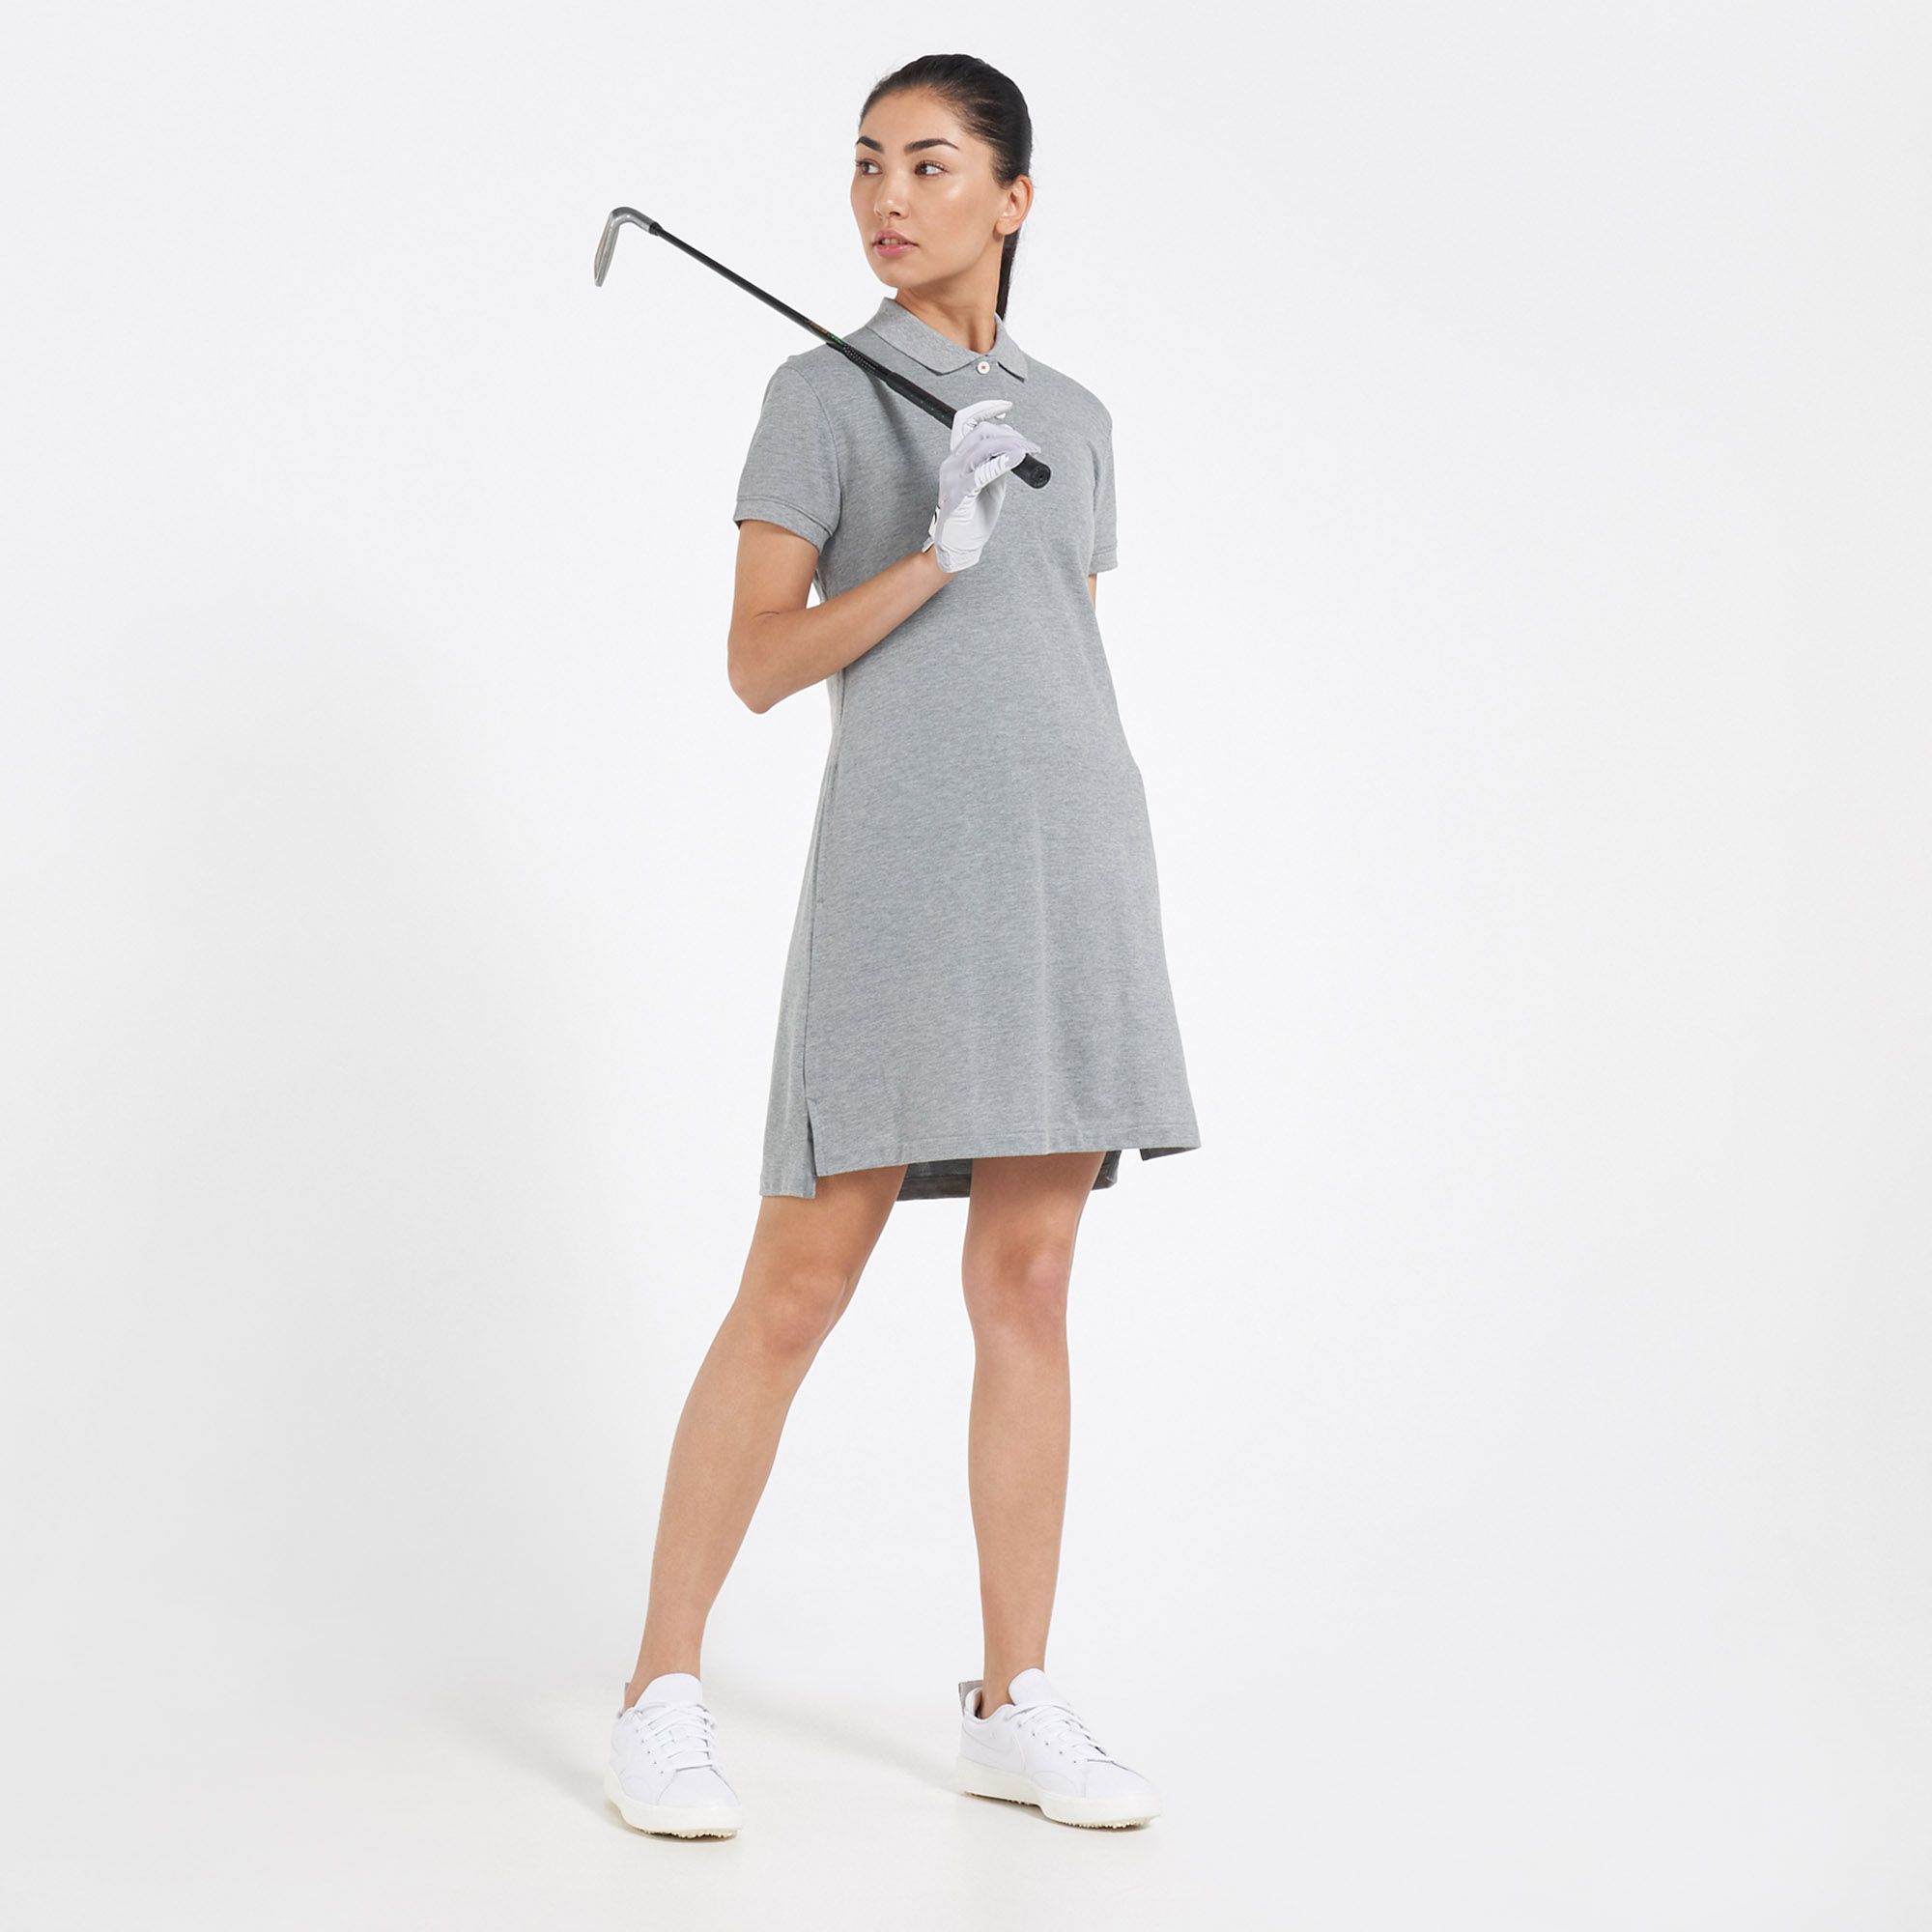 polo dress golf